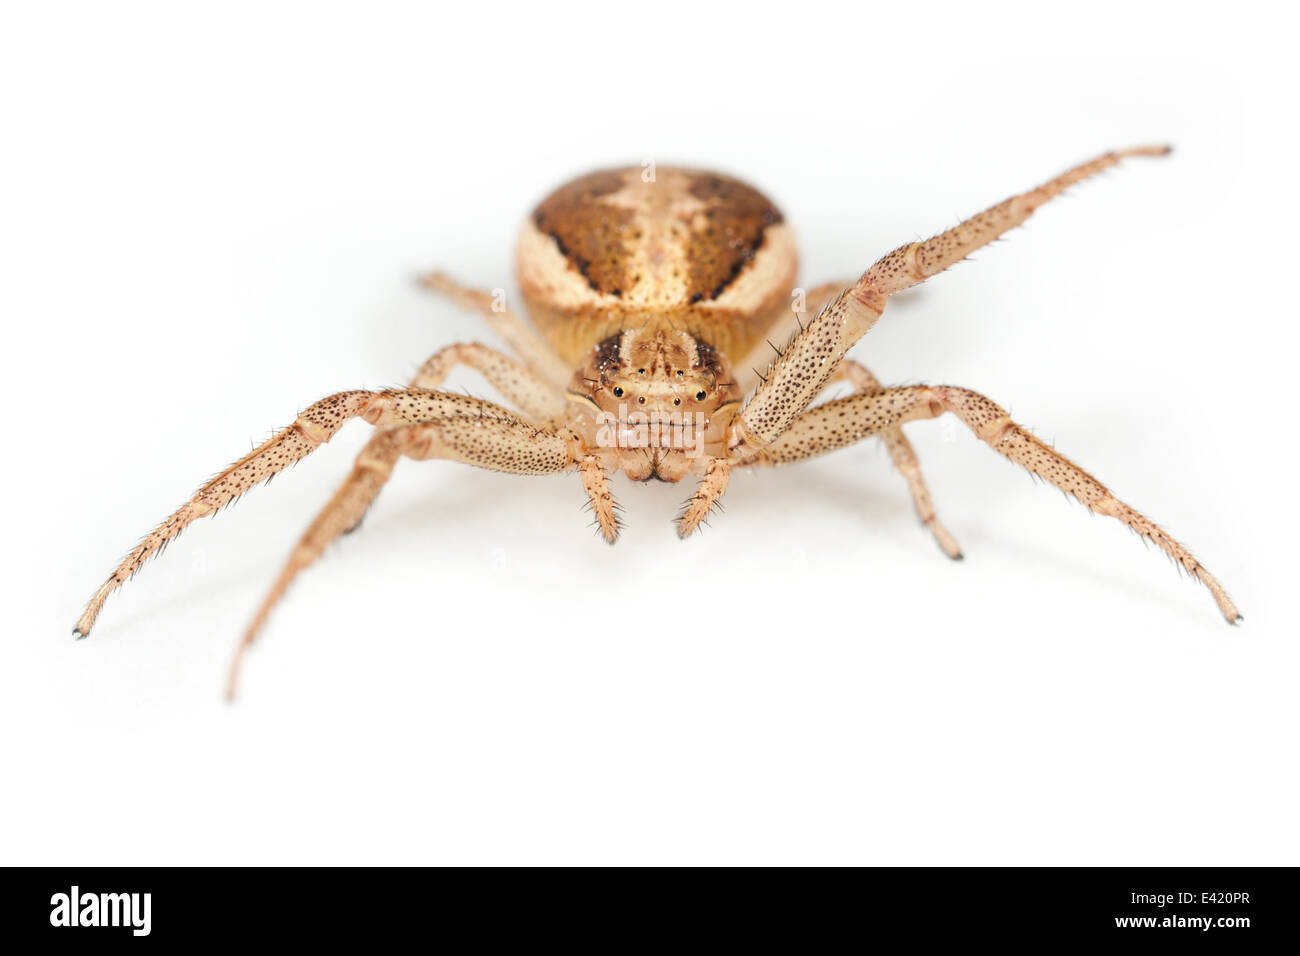 Weibliche Xysticus Ulmi Spinne, Teil der Familie Thomisidae - Krabben Spinnen. Isoliert auf weißem Hintergrund. Stockfoto